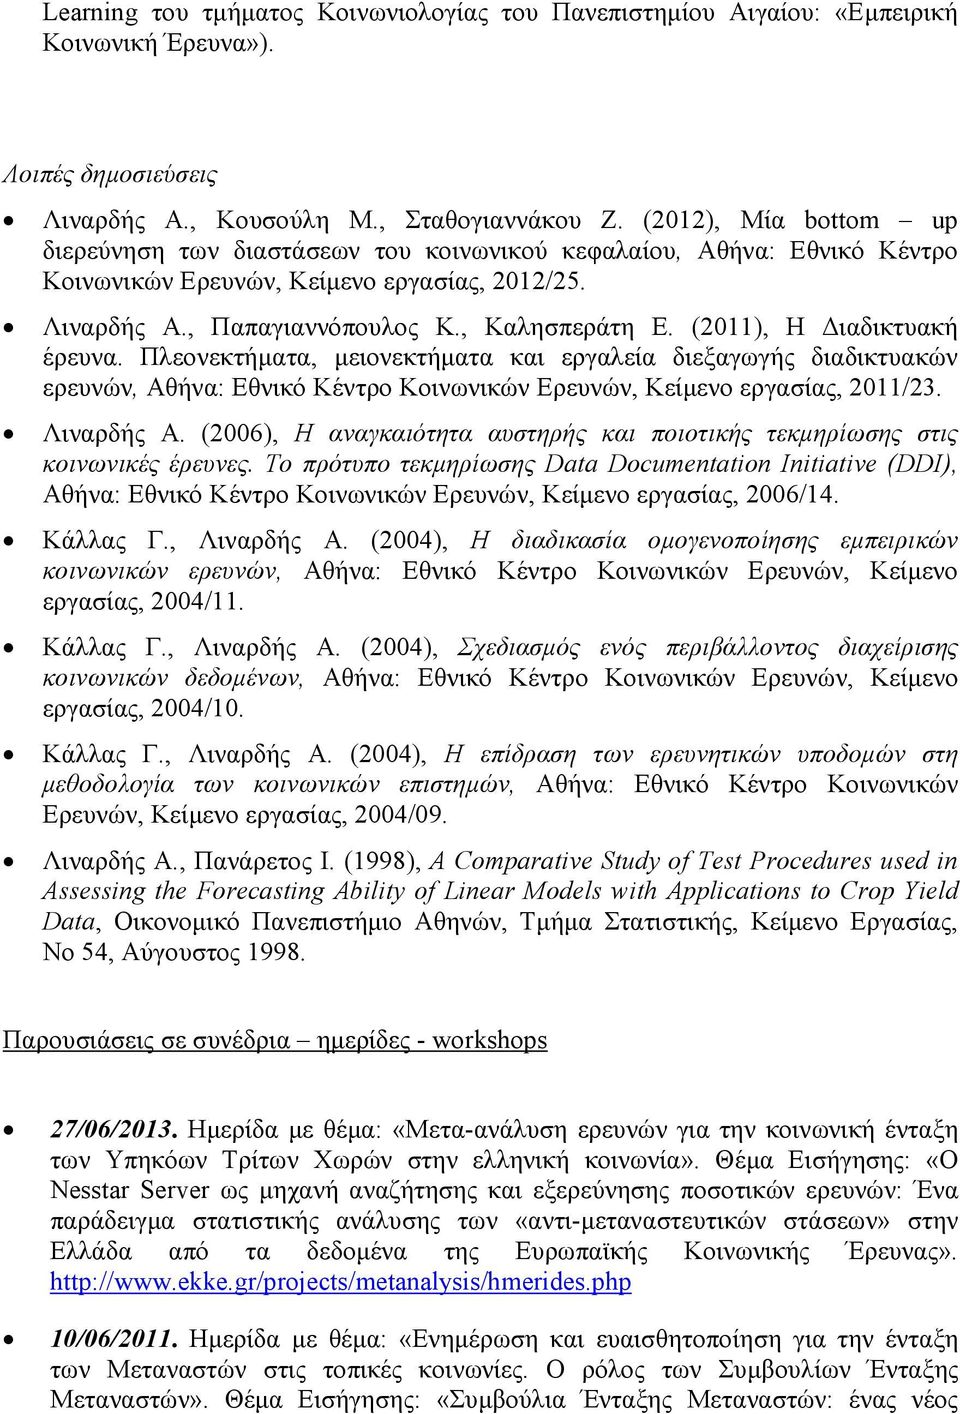 (2011), Η ιαδικτυακή έρευνα. Πλεονεκτήµατα, µειονεκτήµατα και εργαλεία διεξαγωγής διαδικτυακών ερευνών, Αθήνα: Εθνικό Κέντρο Κοινωνικών Ερευνών, Κείµενο εργασίας, 2011/23. Λιναρδής Α.